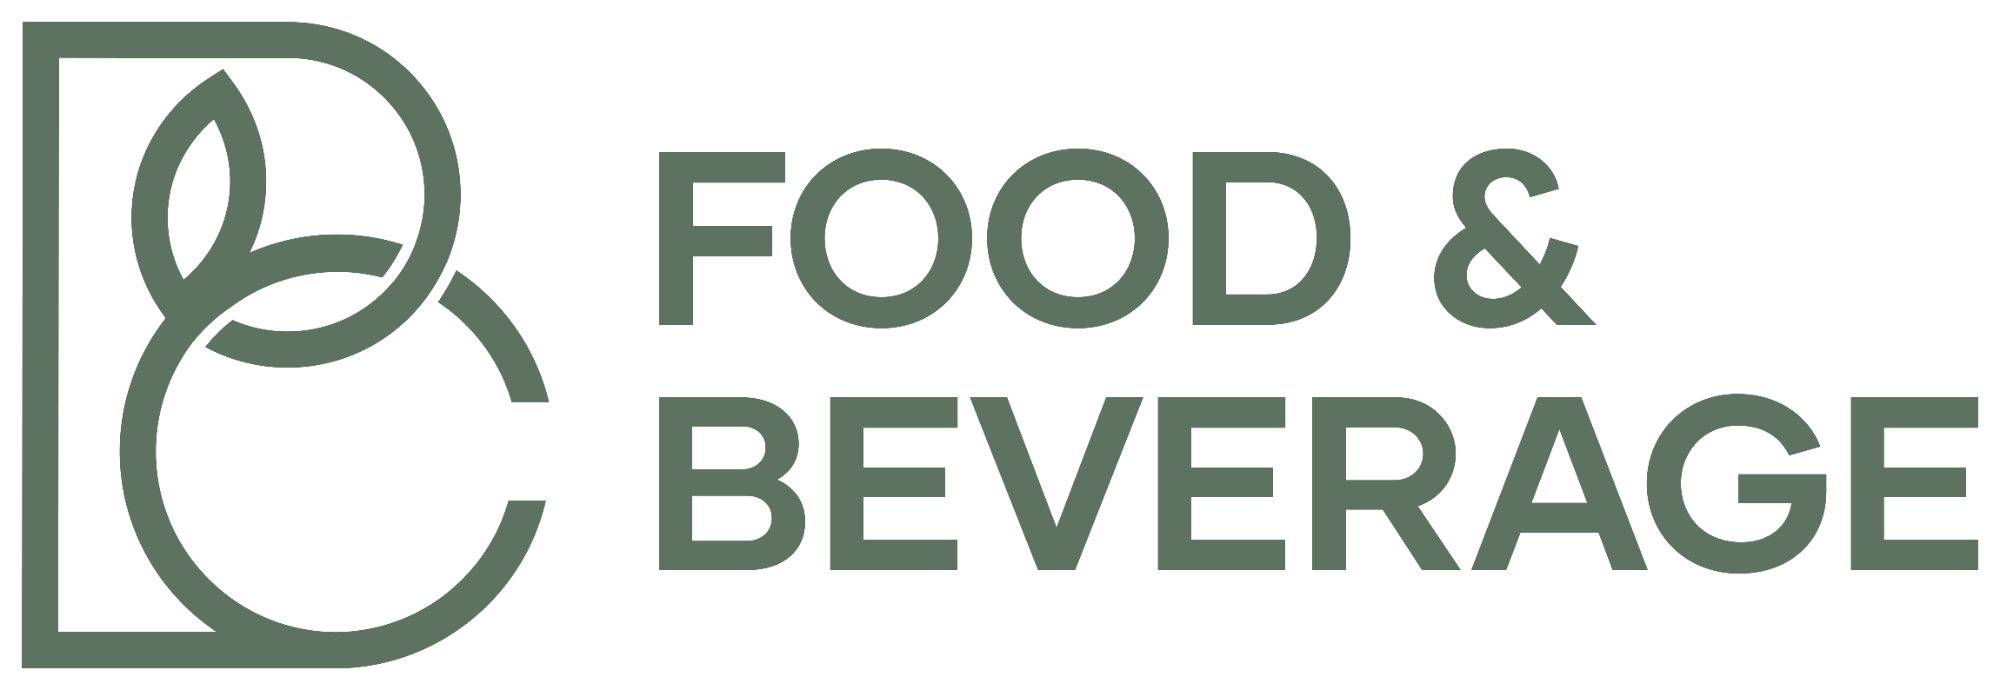 BC Food_Beverage Logo_FINAL